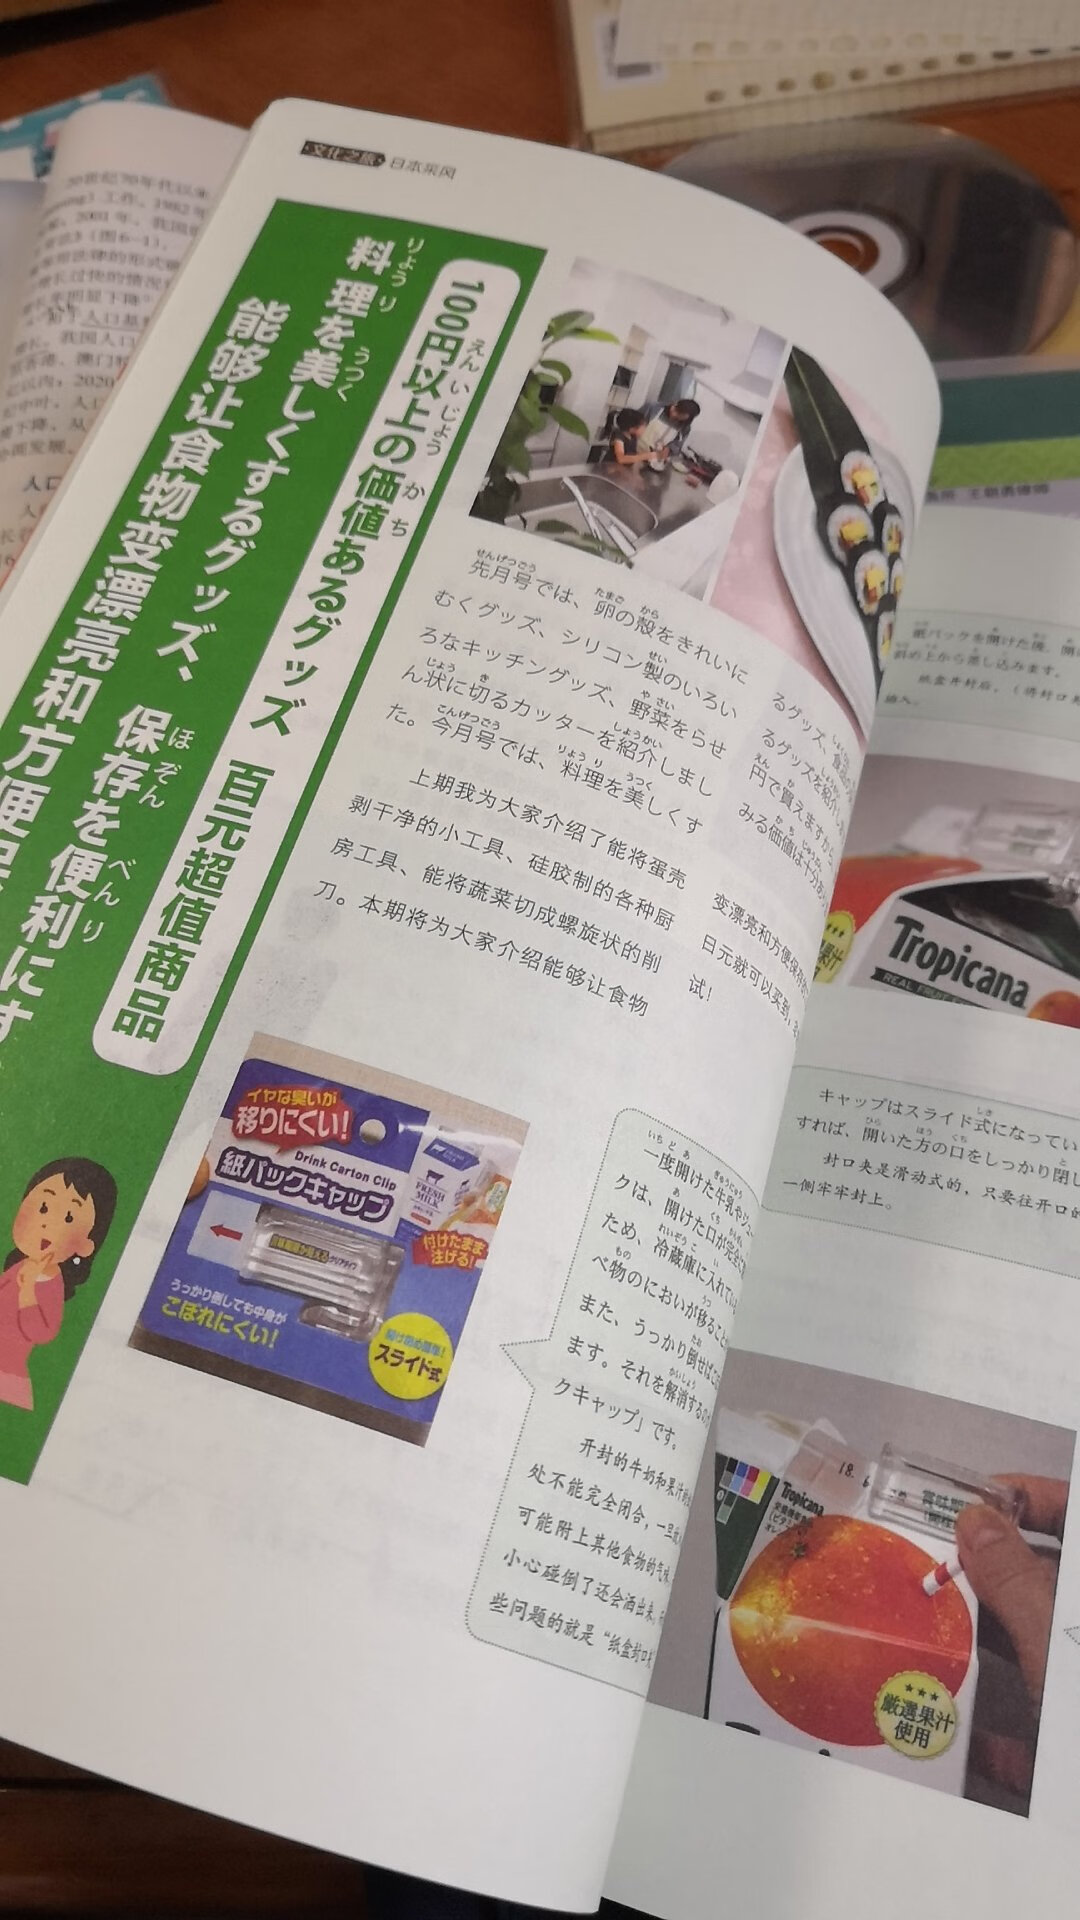 学日语的孩子喜欢就好，觉得这个期刊内容、印刷质量都很满意！